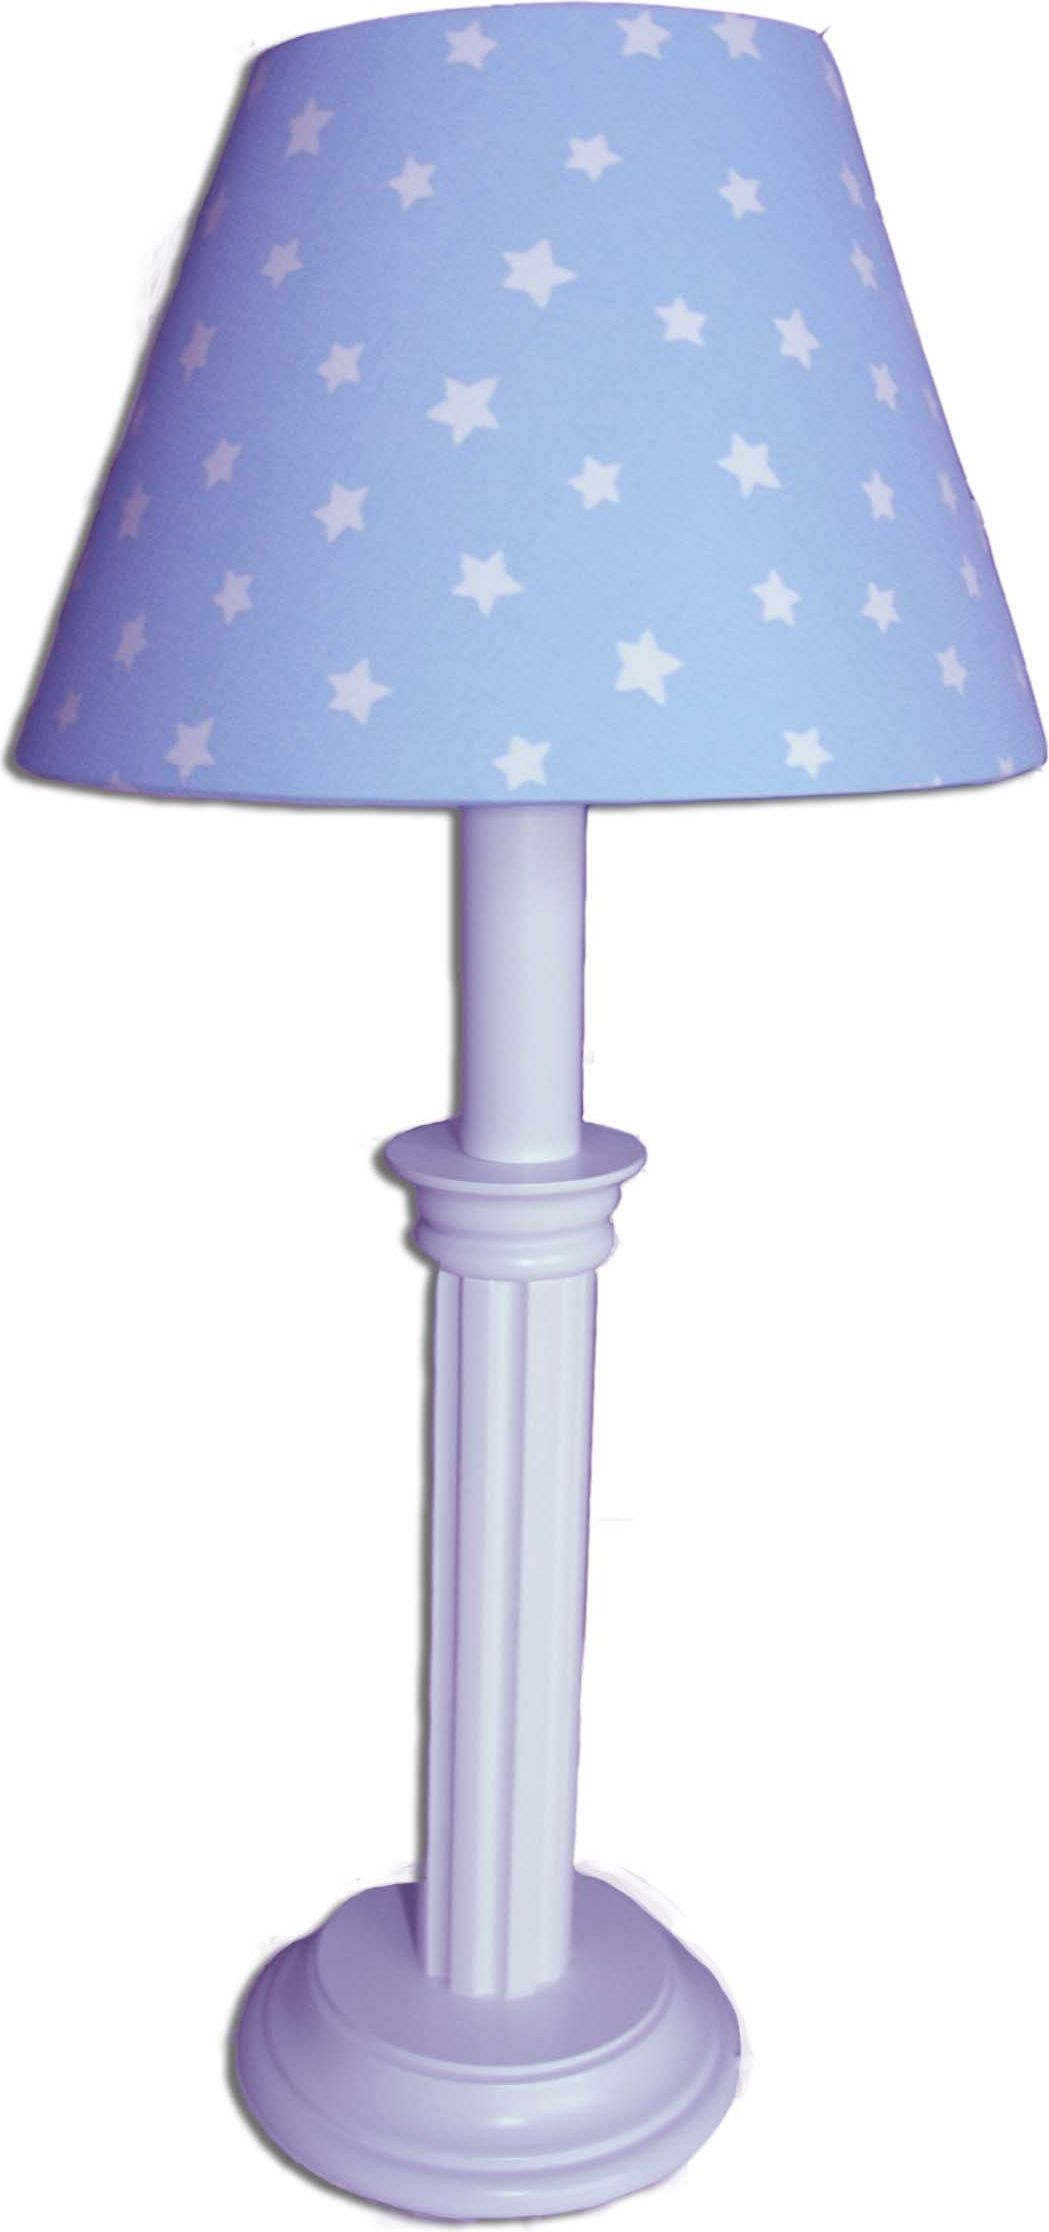 Waldi Leuchten Hvězdička W81515.0 dětská stolní lampička - obrázek 1